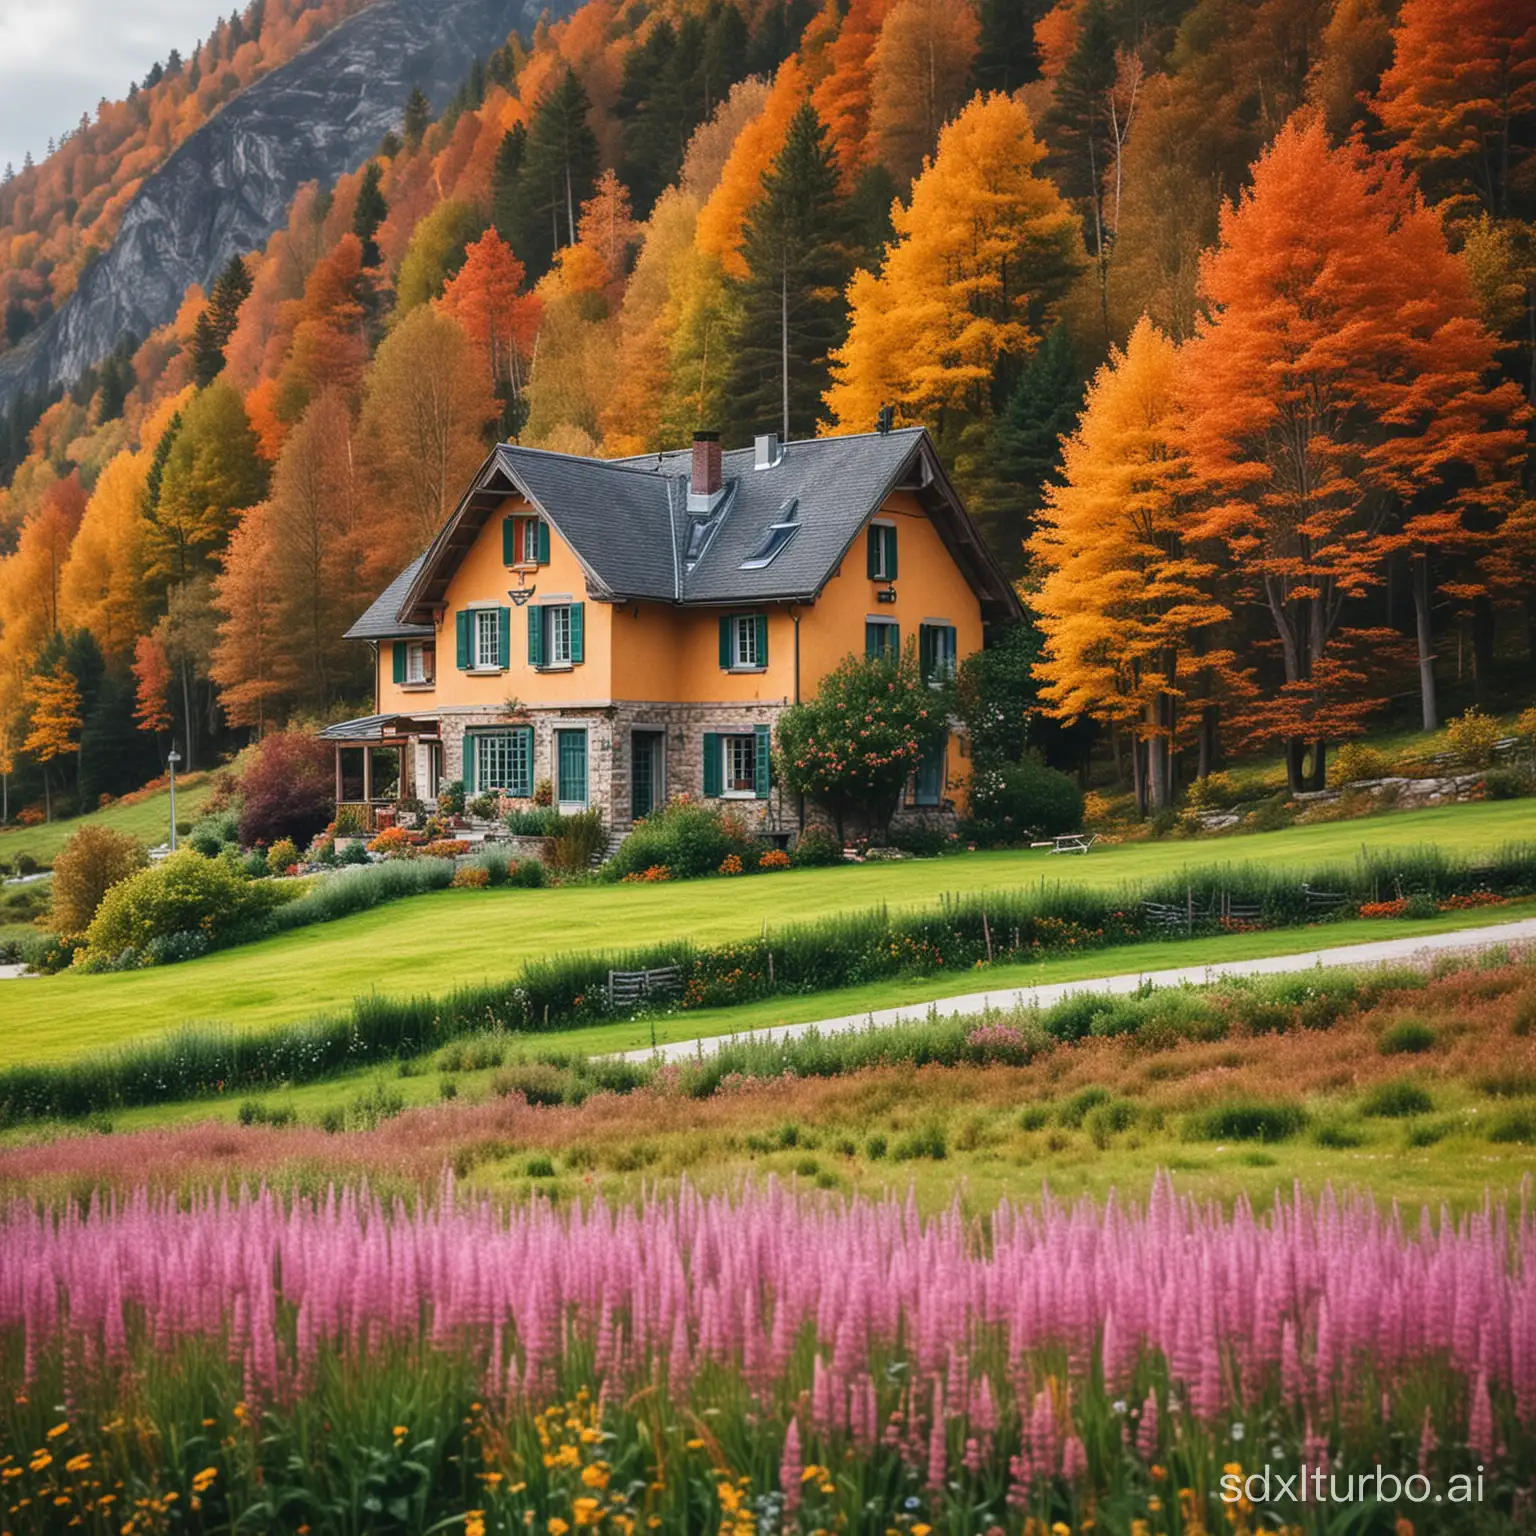 casa mediana en medio de un hermoso paisaje haz que tenga el paisaje desenfocado y realza los colores de la casa